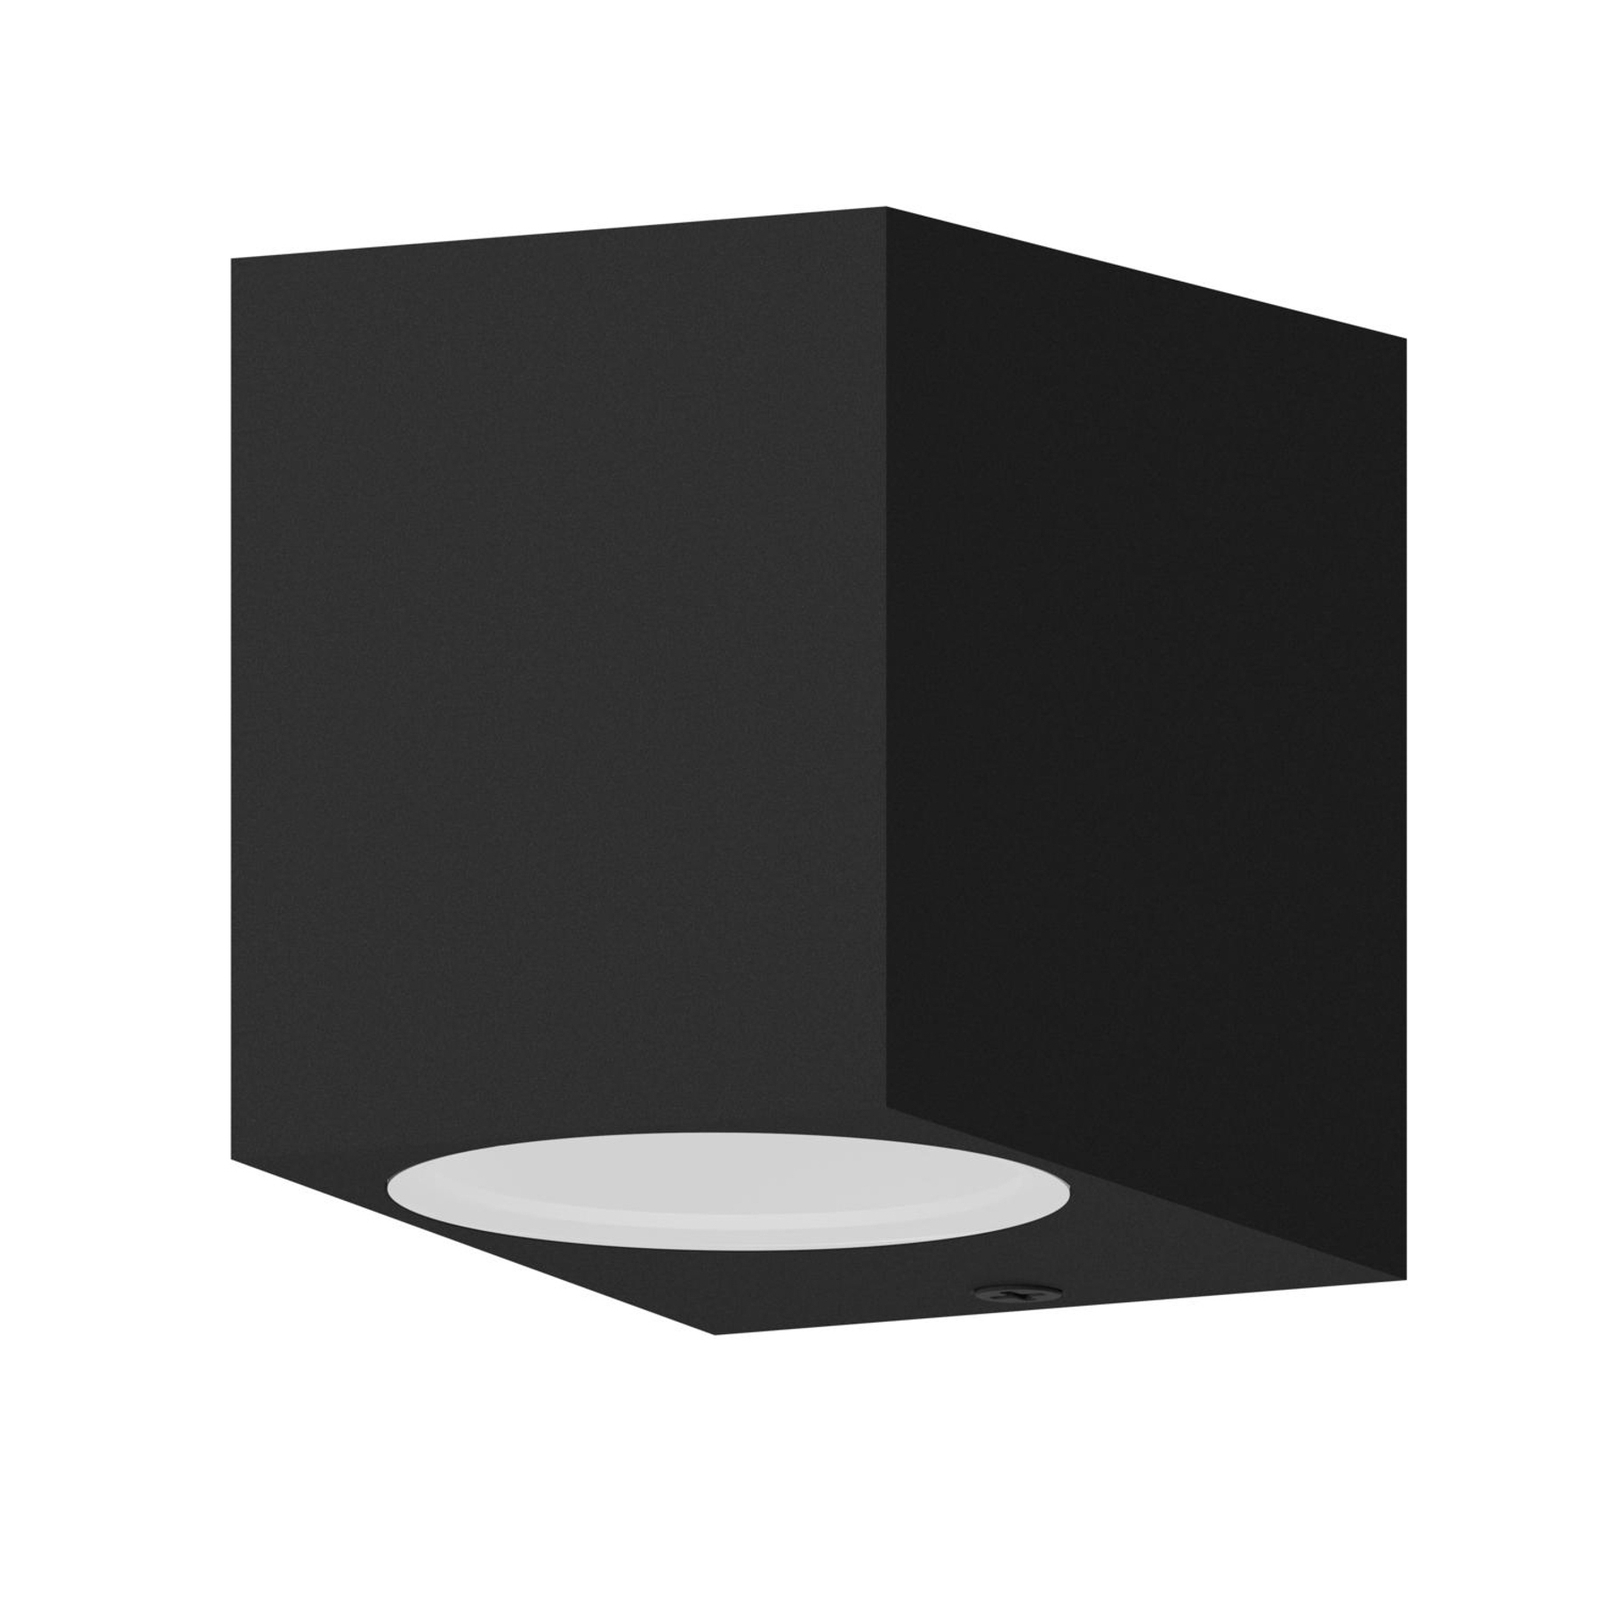 Venkovní nástěnné svítidlo Calex GU10, přisazené, výška 8 cm, černé